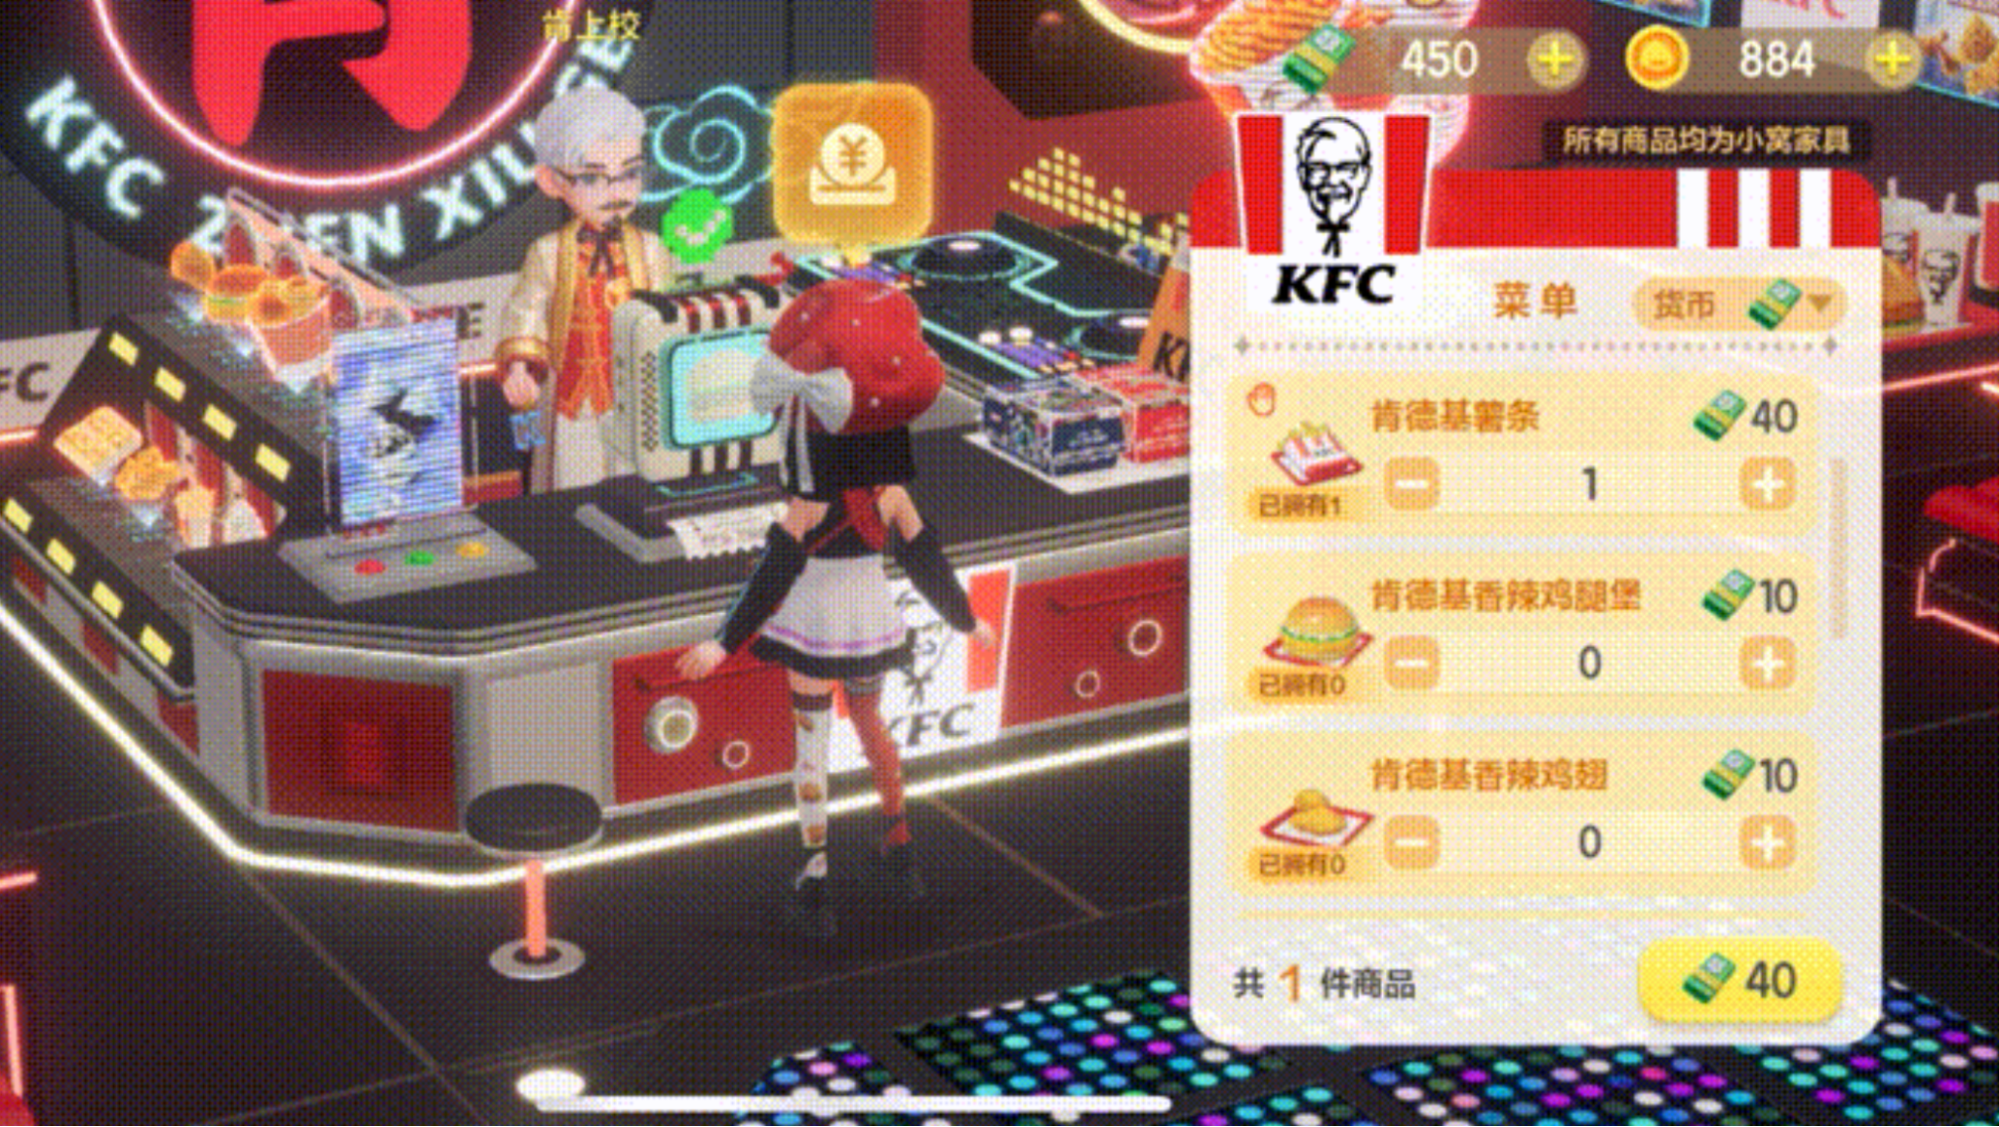 Image - KFC burgers virtual experience